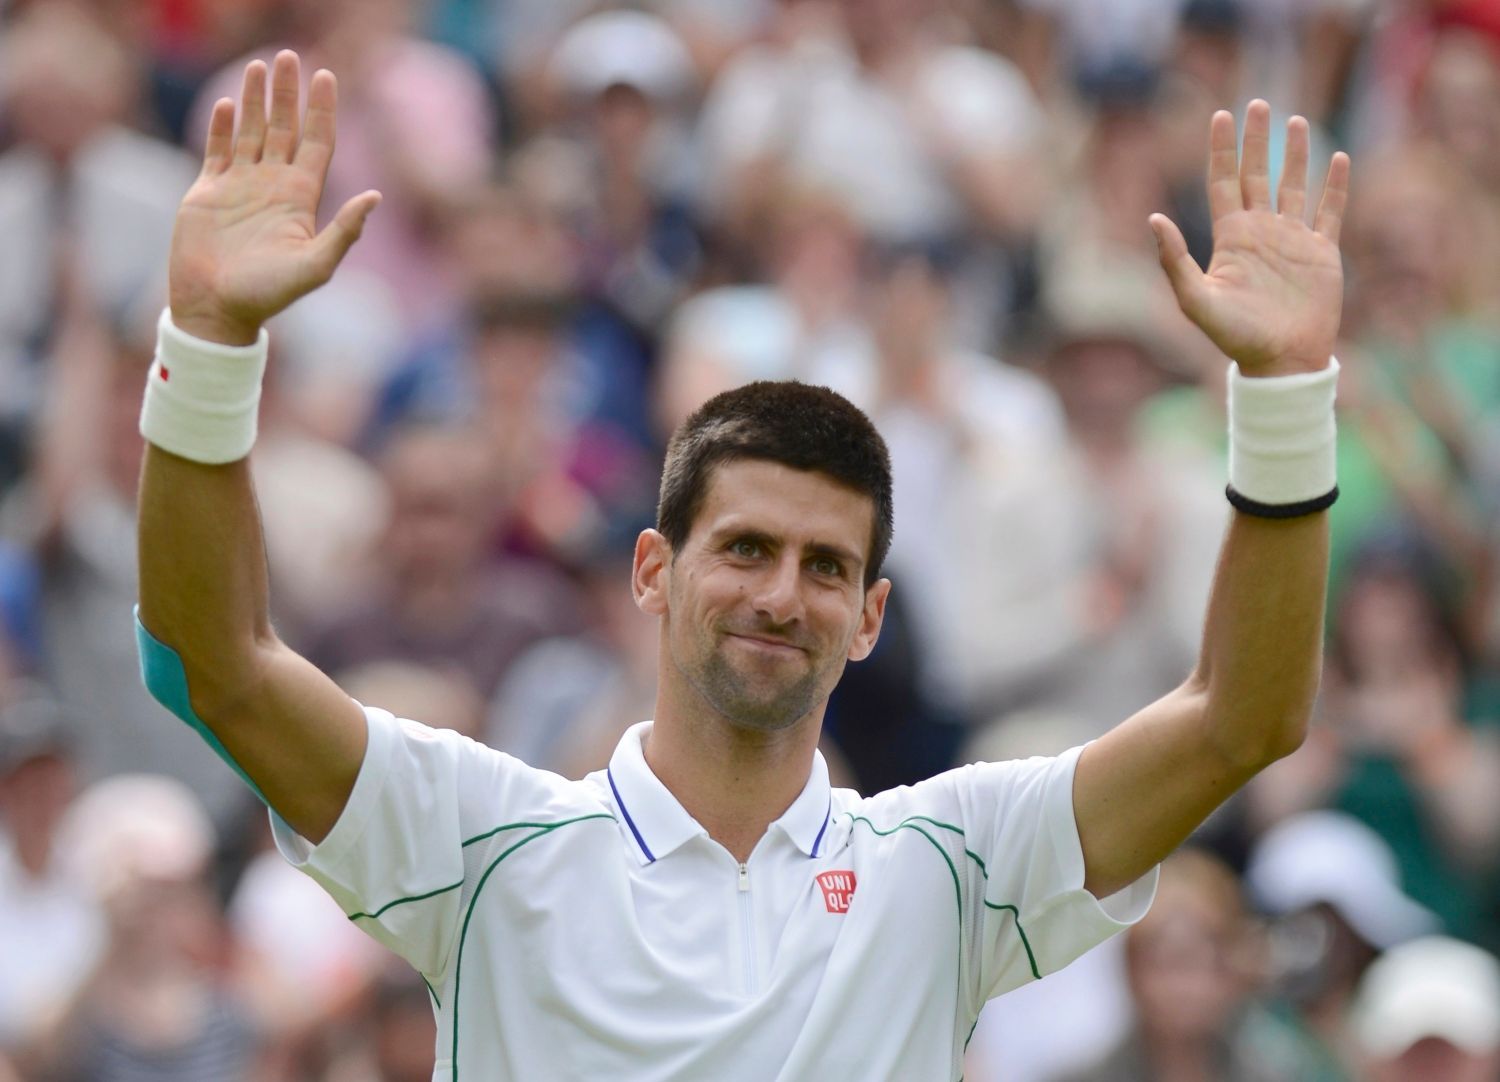 Srbský tenista Novak Djokovič se raduje z vítězství nad Španělem Juanem-Carlosem Ferrerem v 1. kole na Wimbledonu 2012